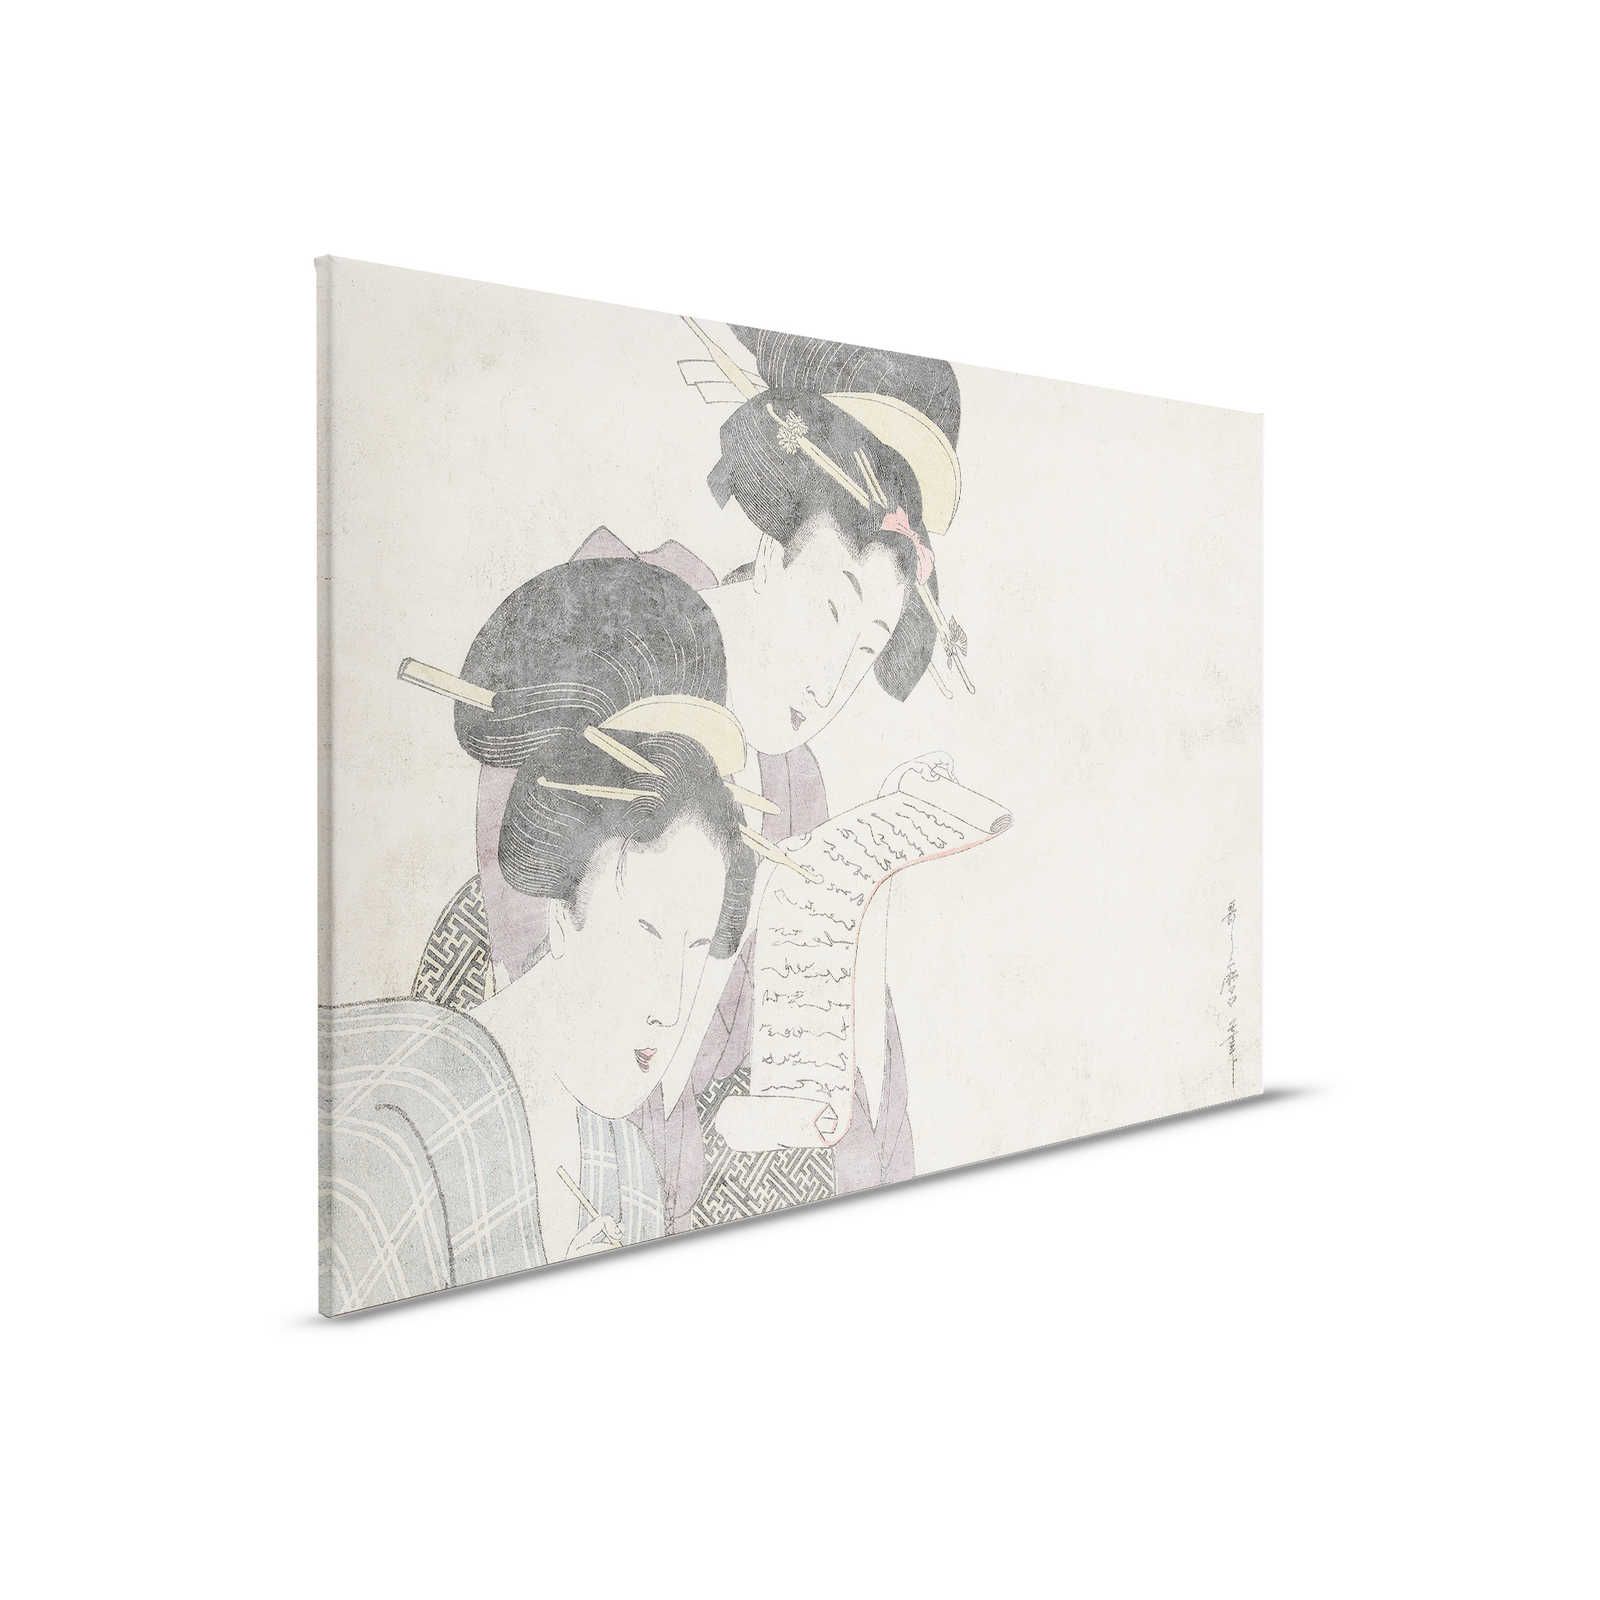 Osaka 3 - Aziatisch Canvas Schilderij Vintage Tekening & Gipsstructuur - 0.90 m x 0.60 m
